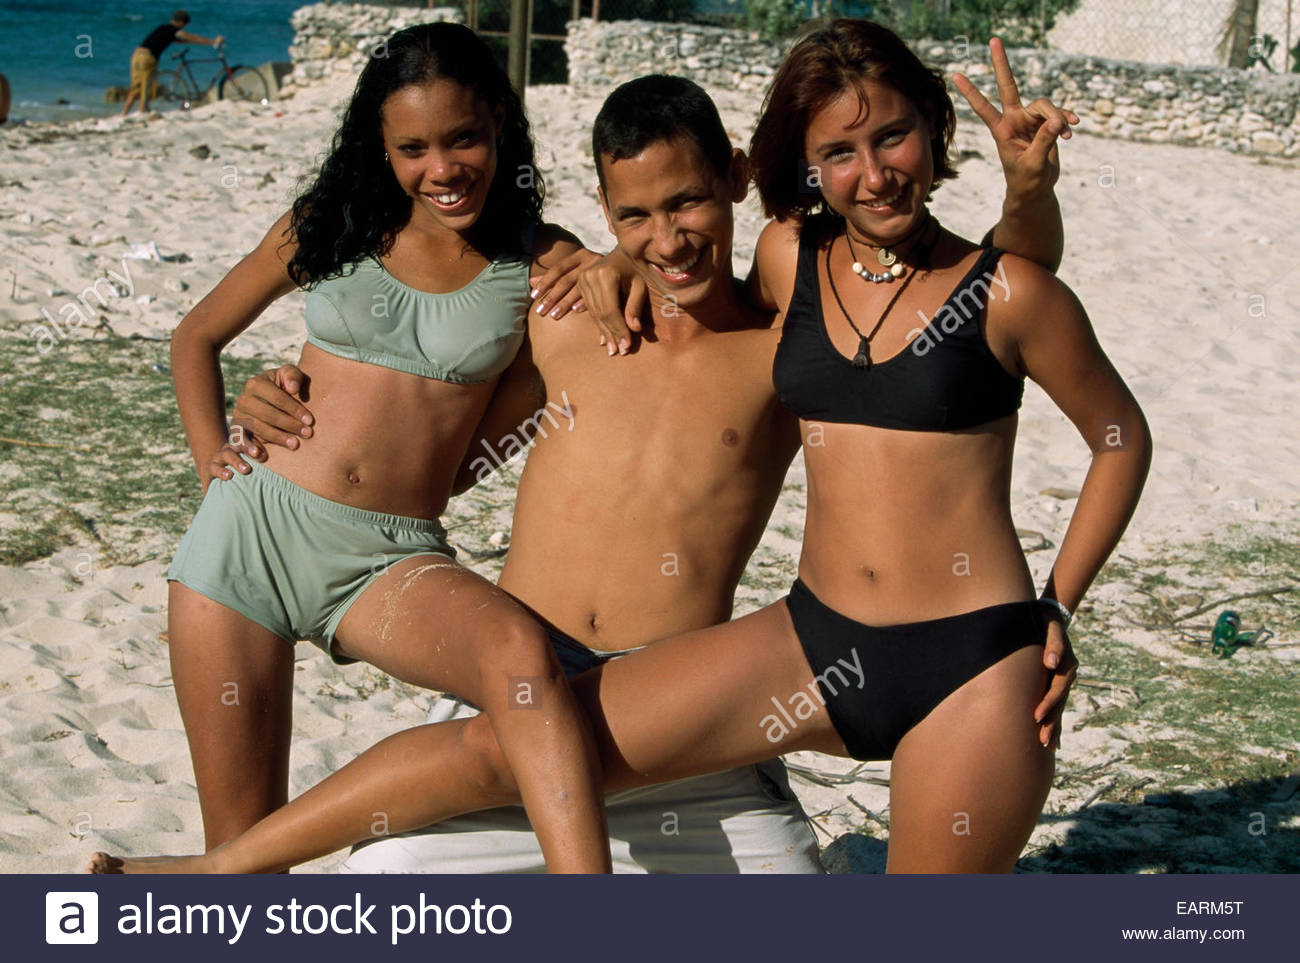 Cuba Sex Teens 18